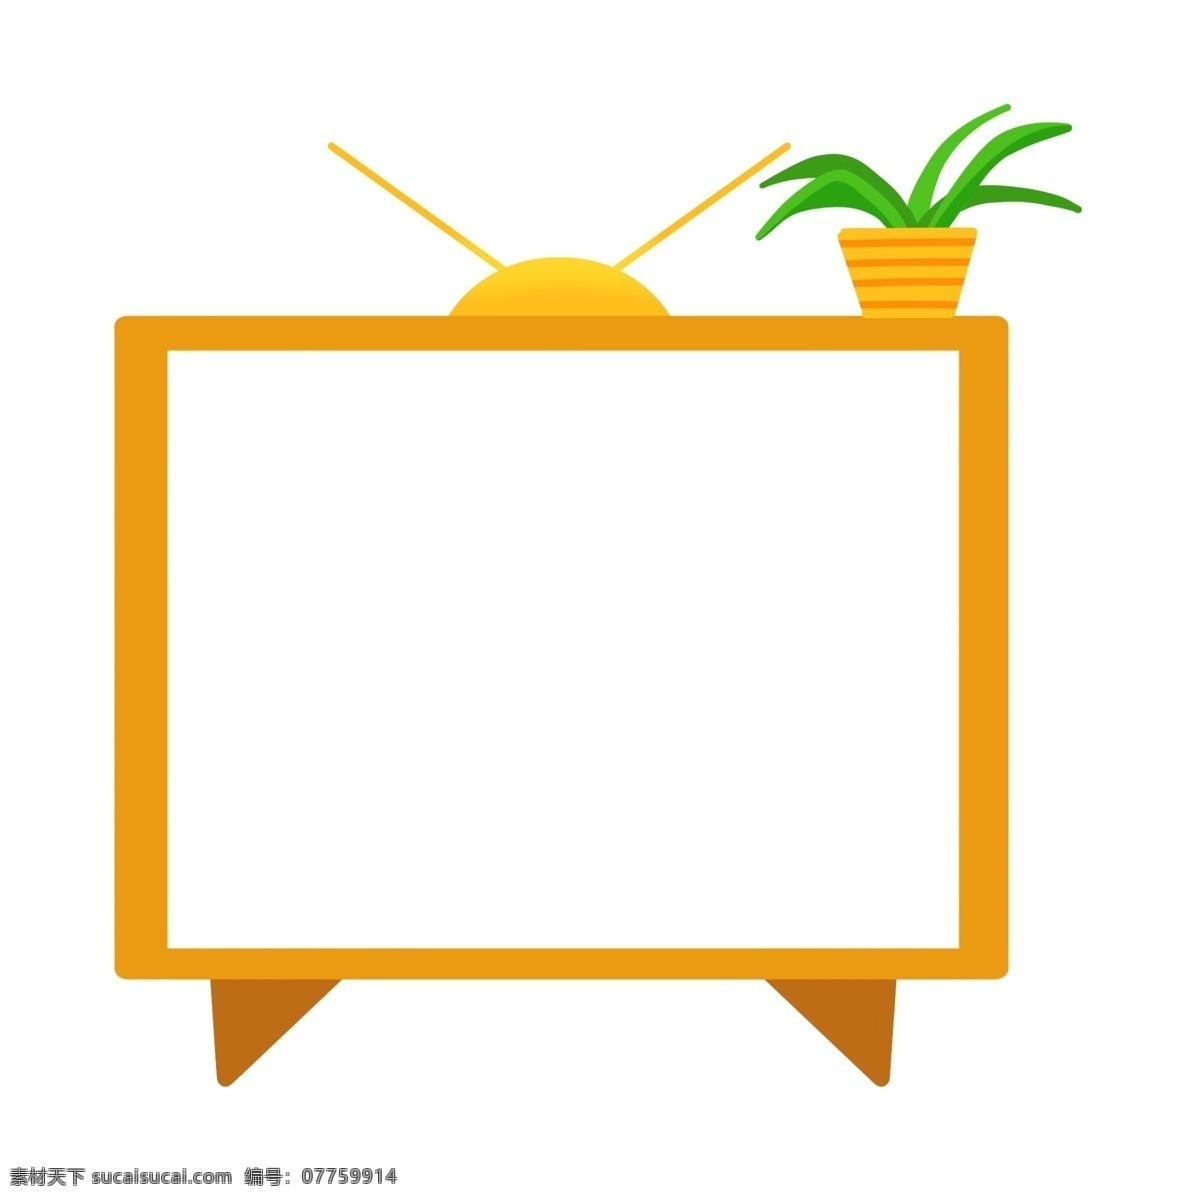 卡通 电视 边框 插画 可爱边框 黄色边框 天线 盆栽 盆栽植物 植物边框 卡通边框 电视边框插画